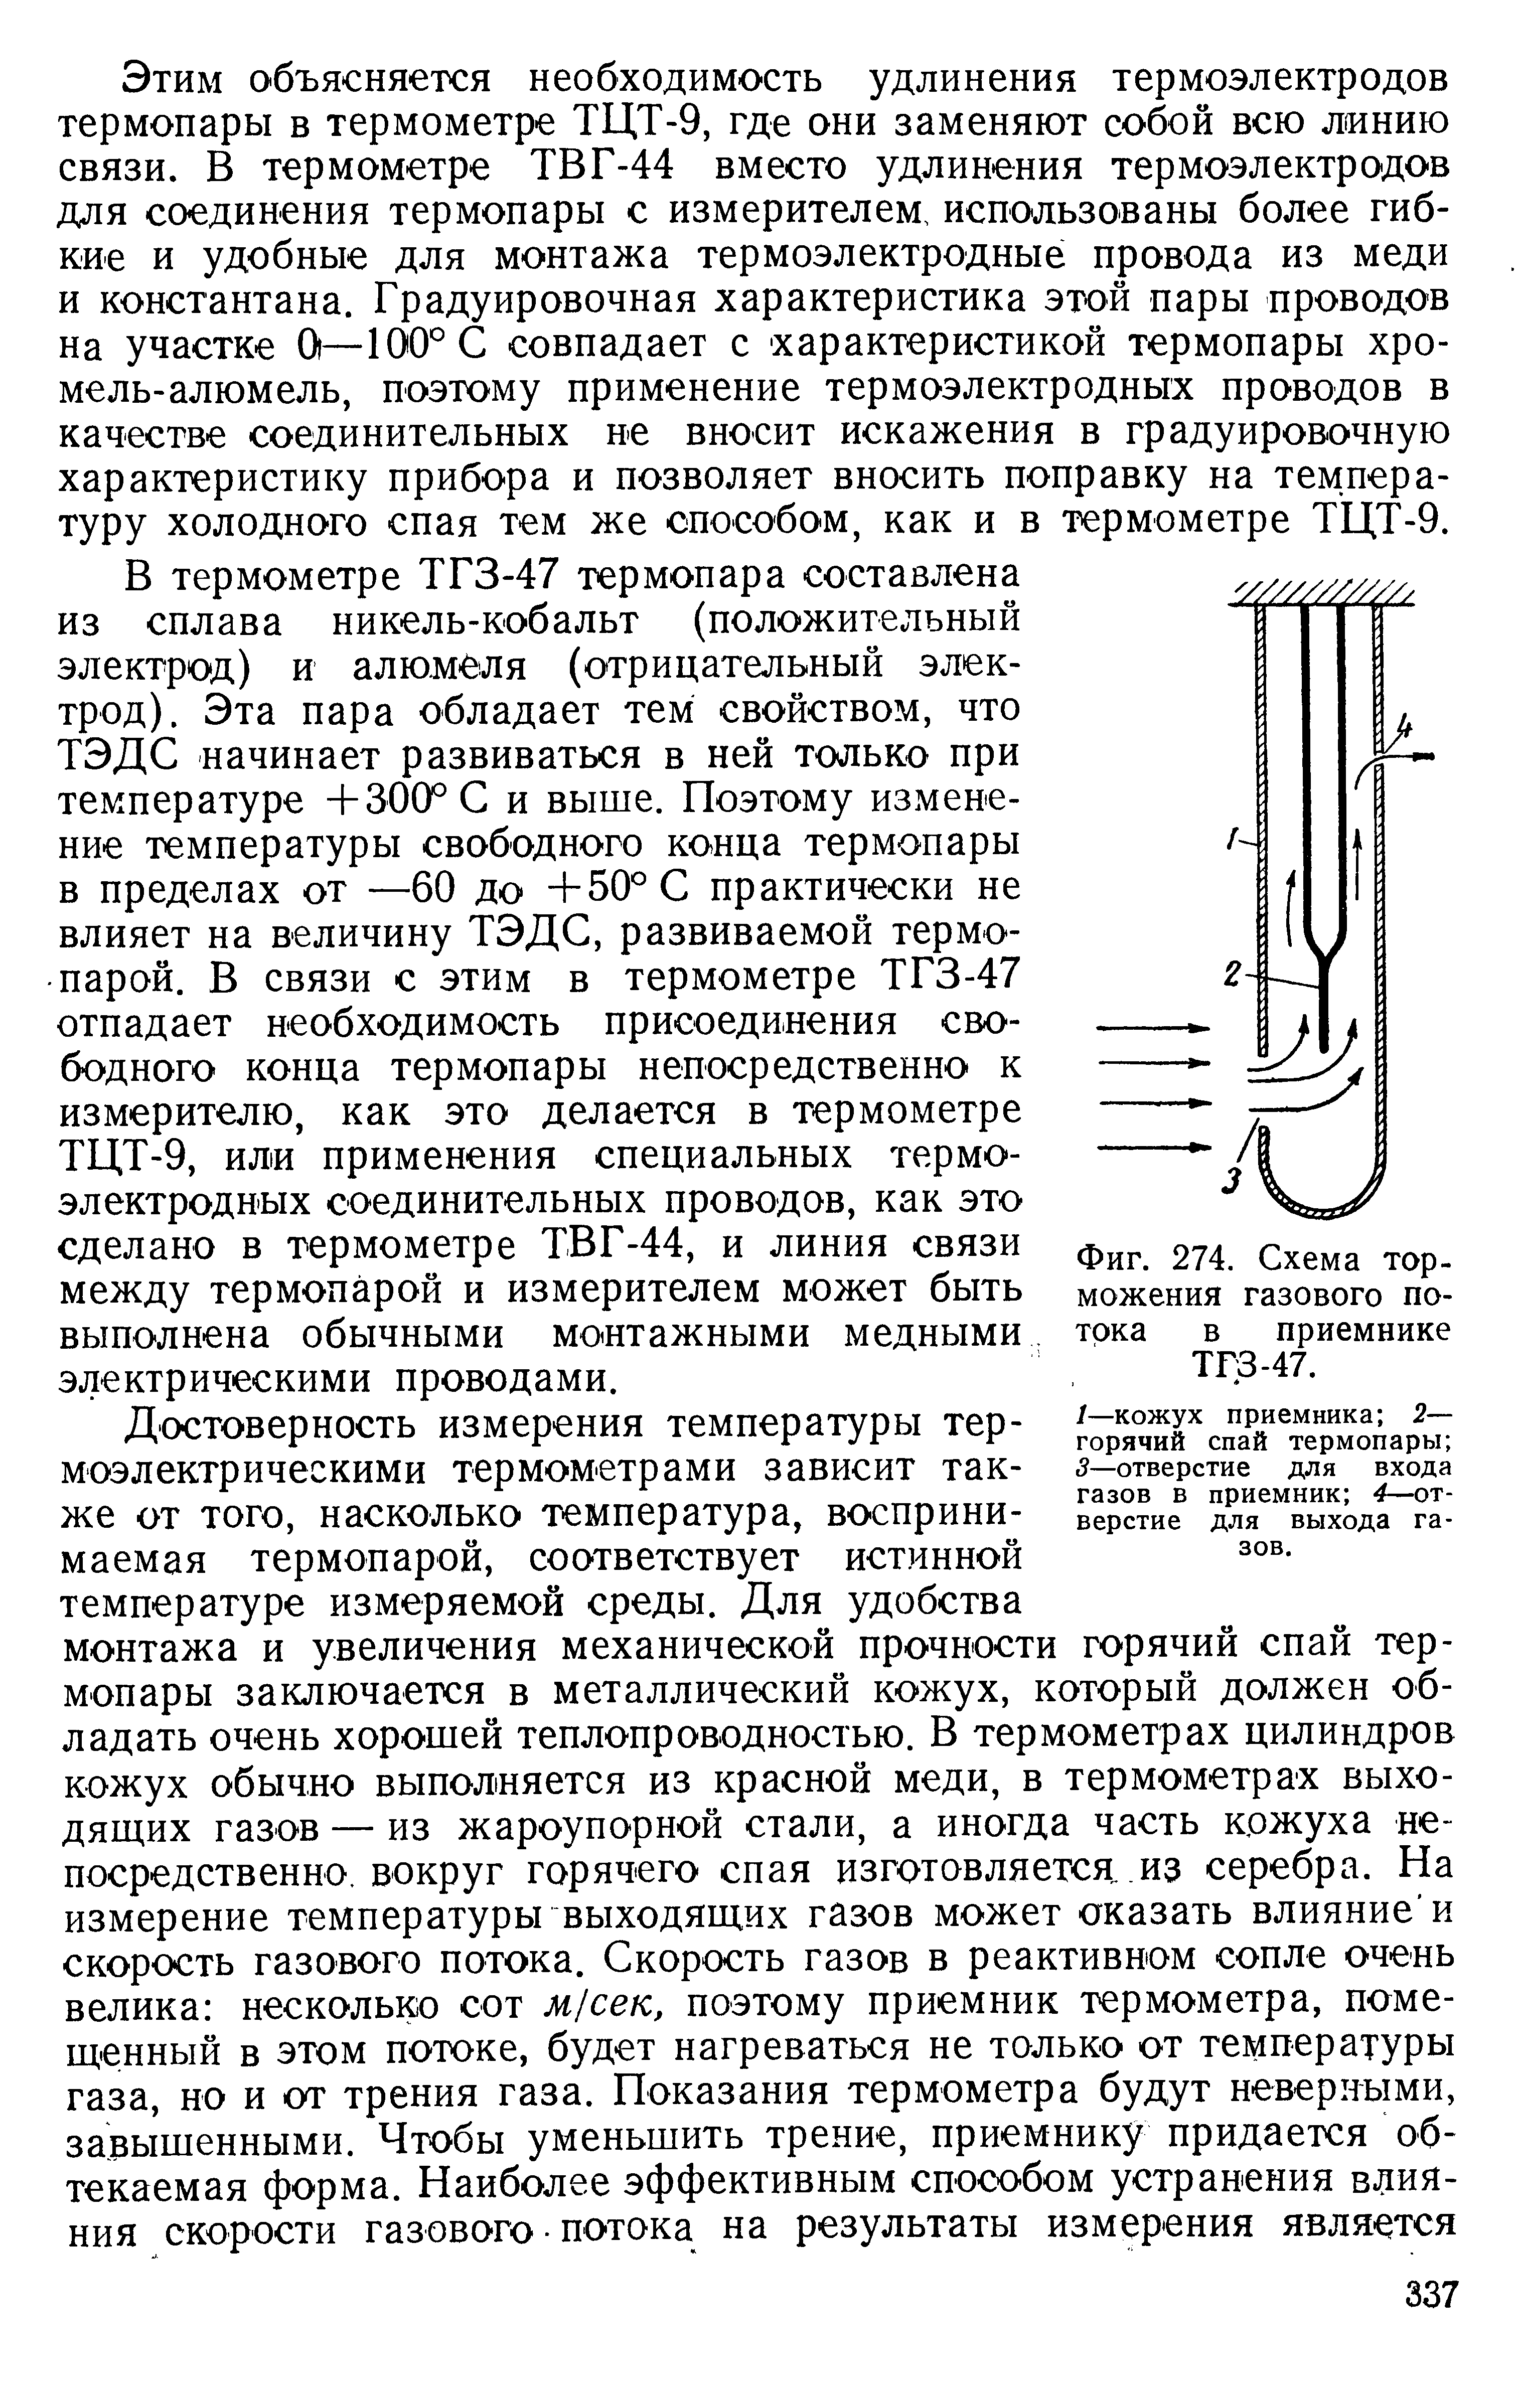 Фиг. 274. Схема торможения газового потока в приемнике ТГЗ-47.
